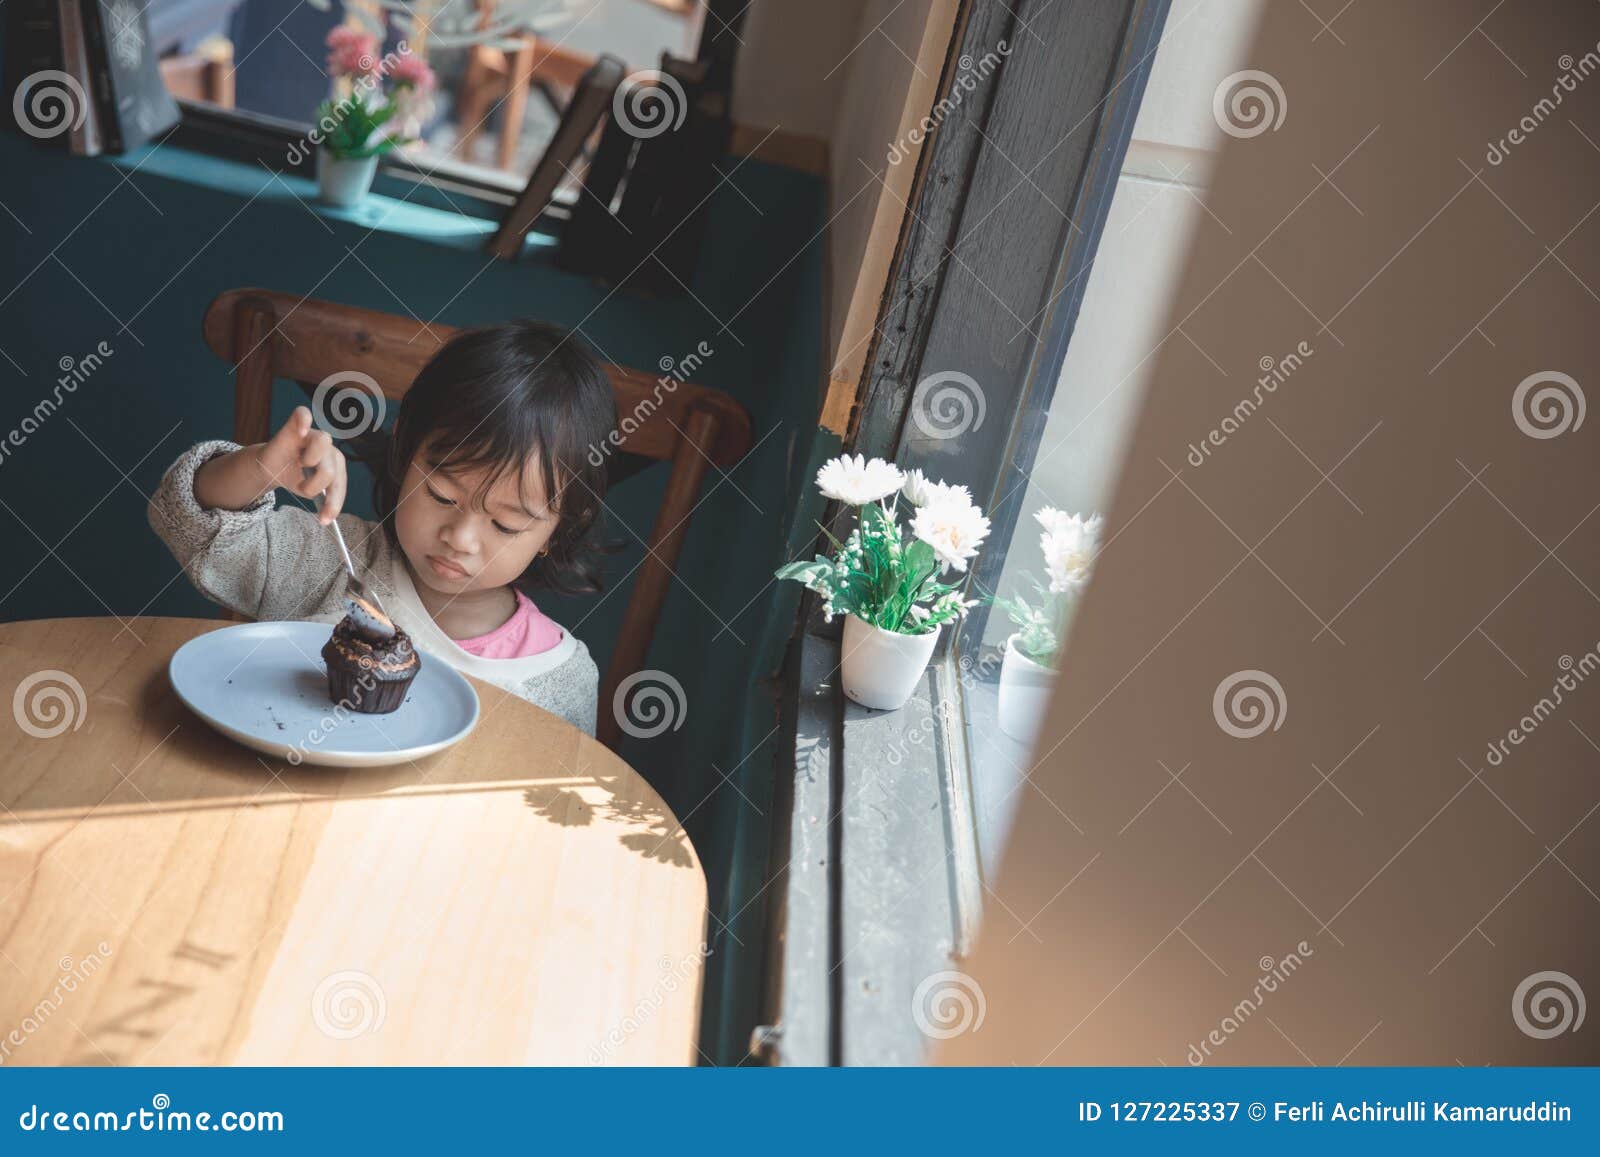 Asian girl eating a cake